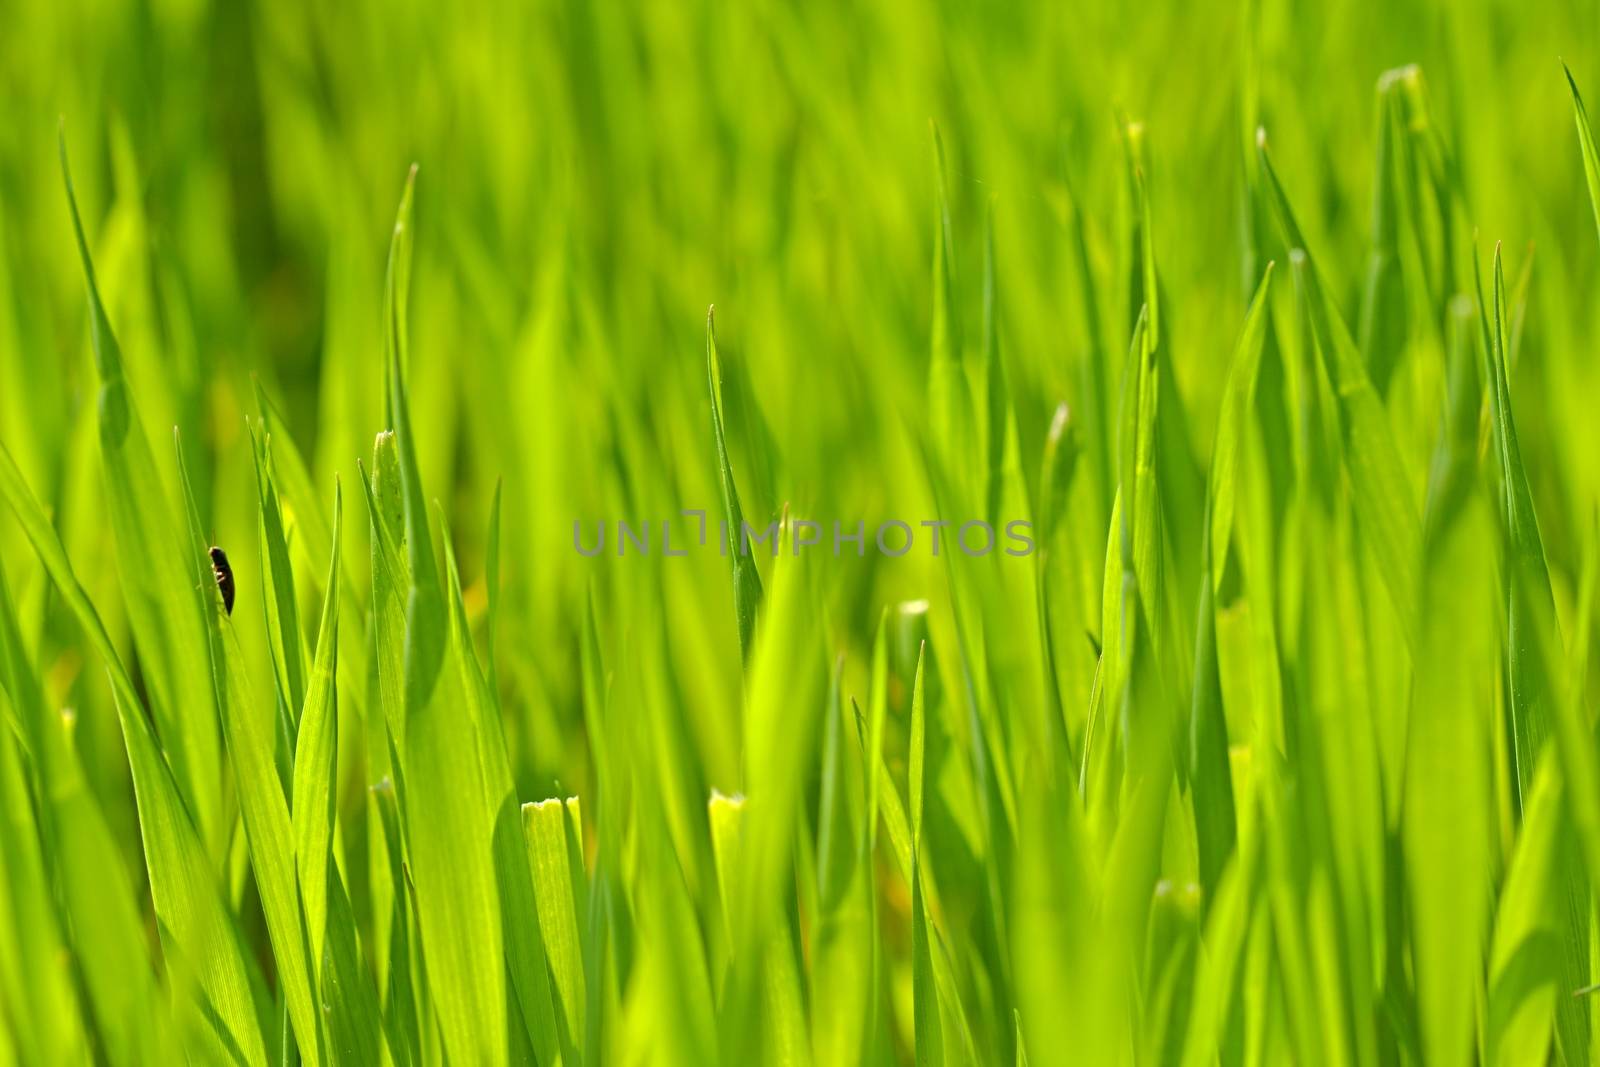 Green grass by Dermot68